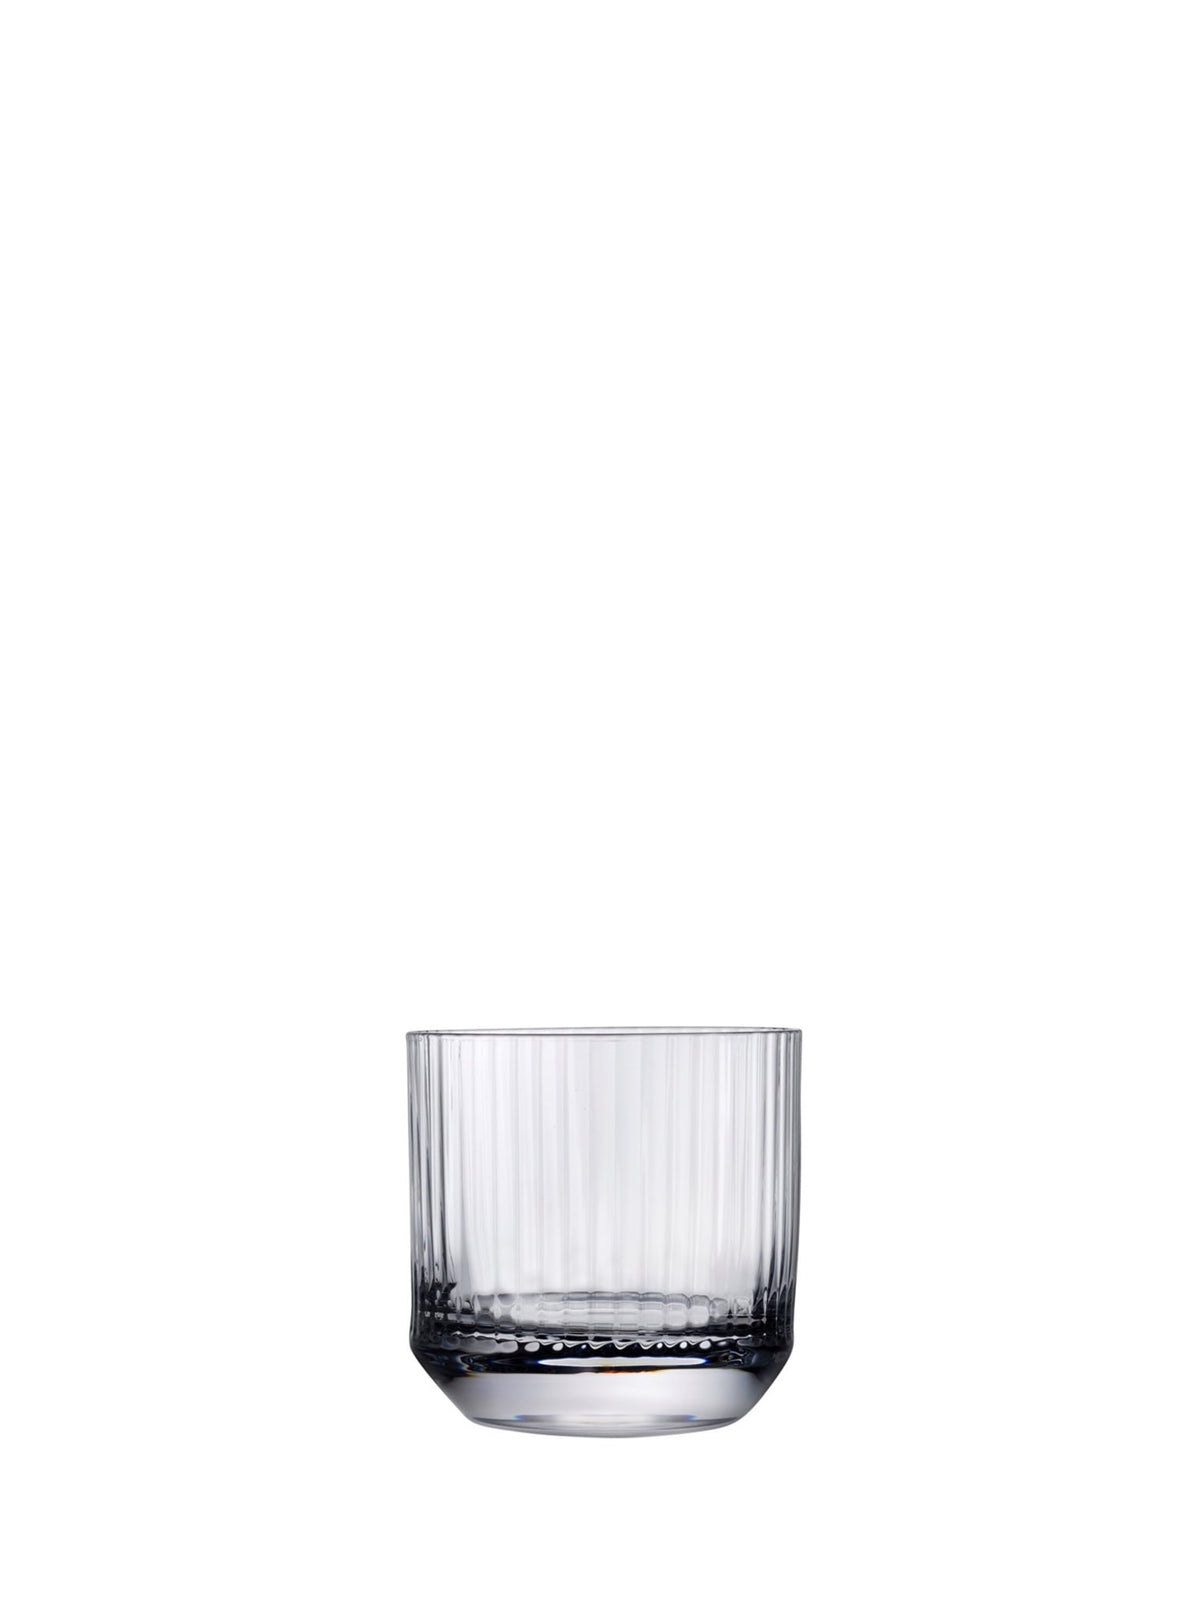 Elegant whiskyglas - Et smukt glas til at nyde whiskyens komplekse smagsoplevelse